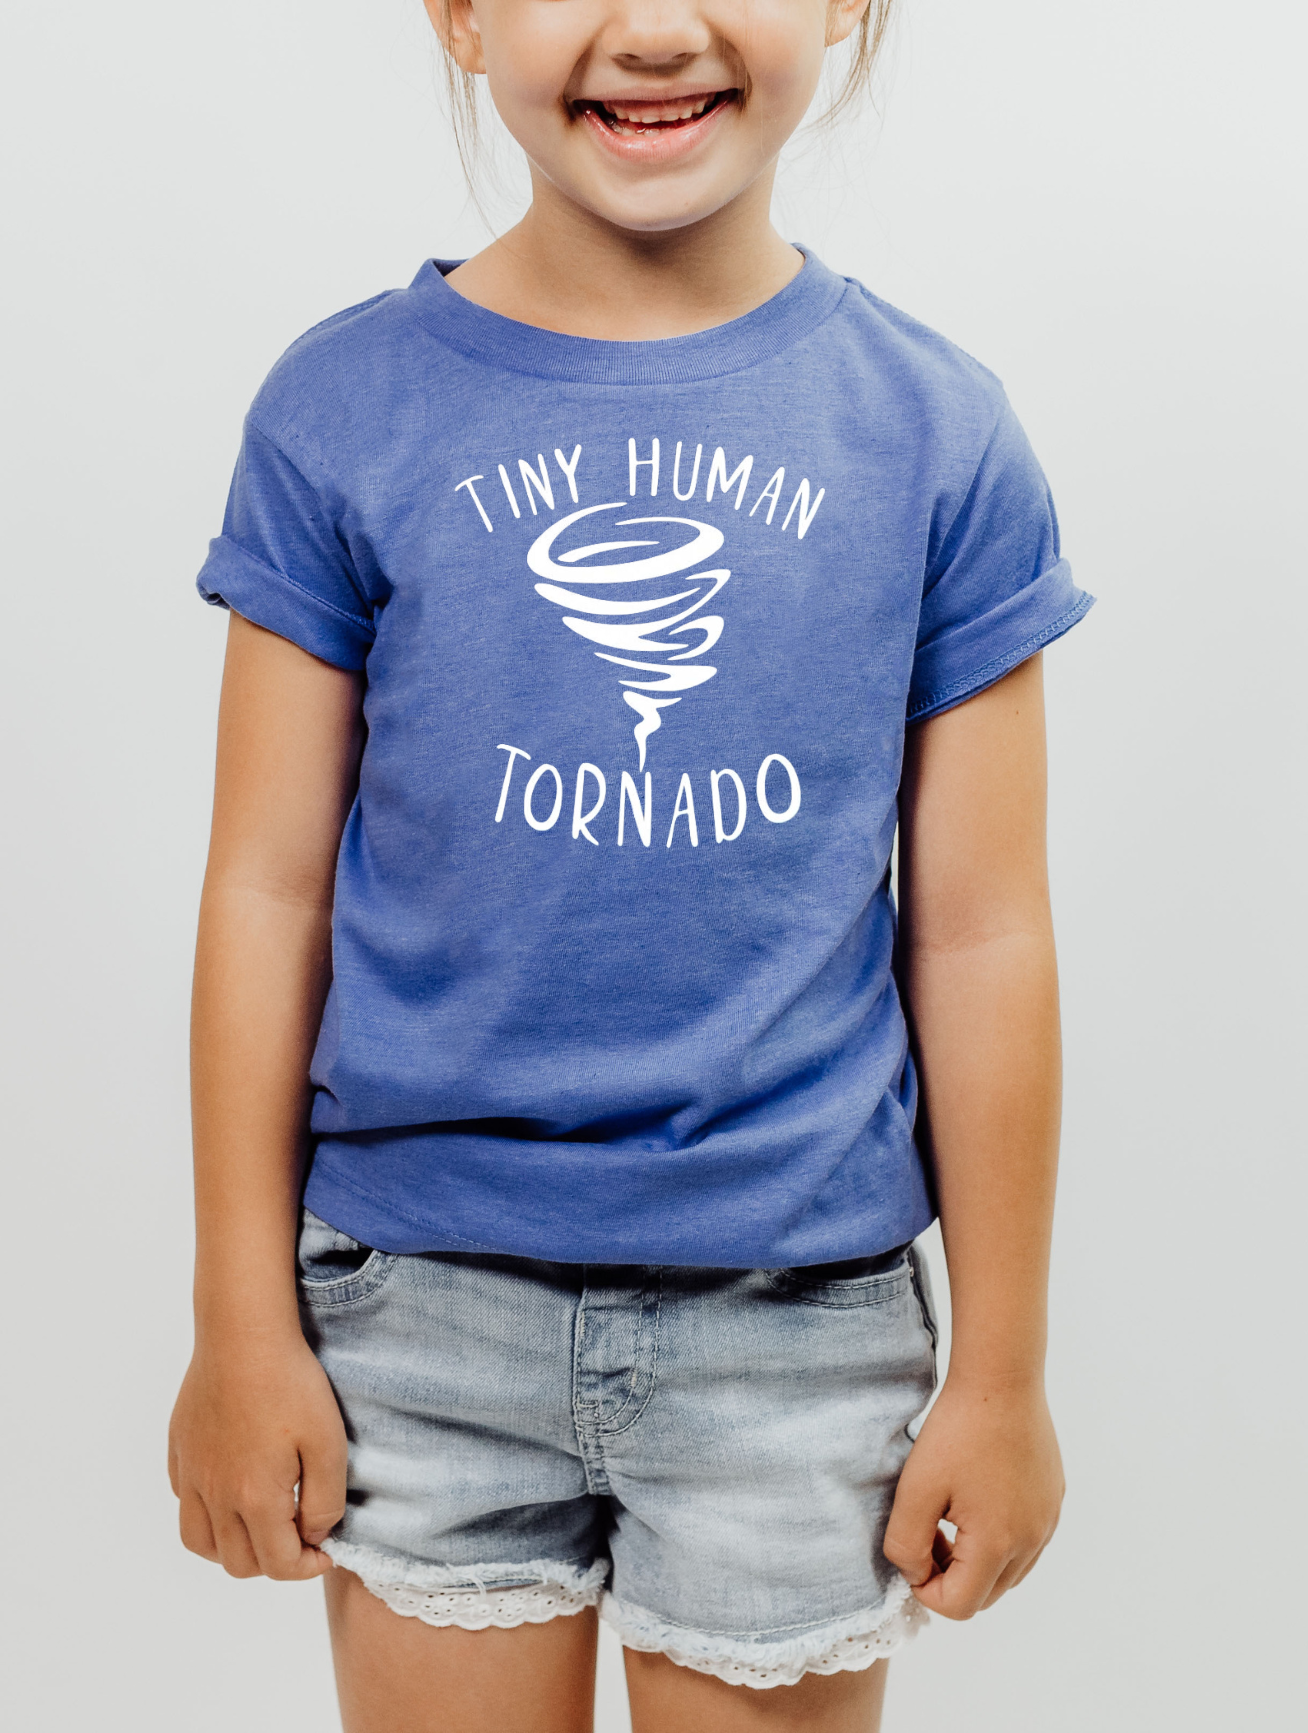 Tiny Human Tornado - Youth T-shirt